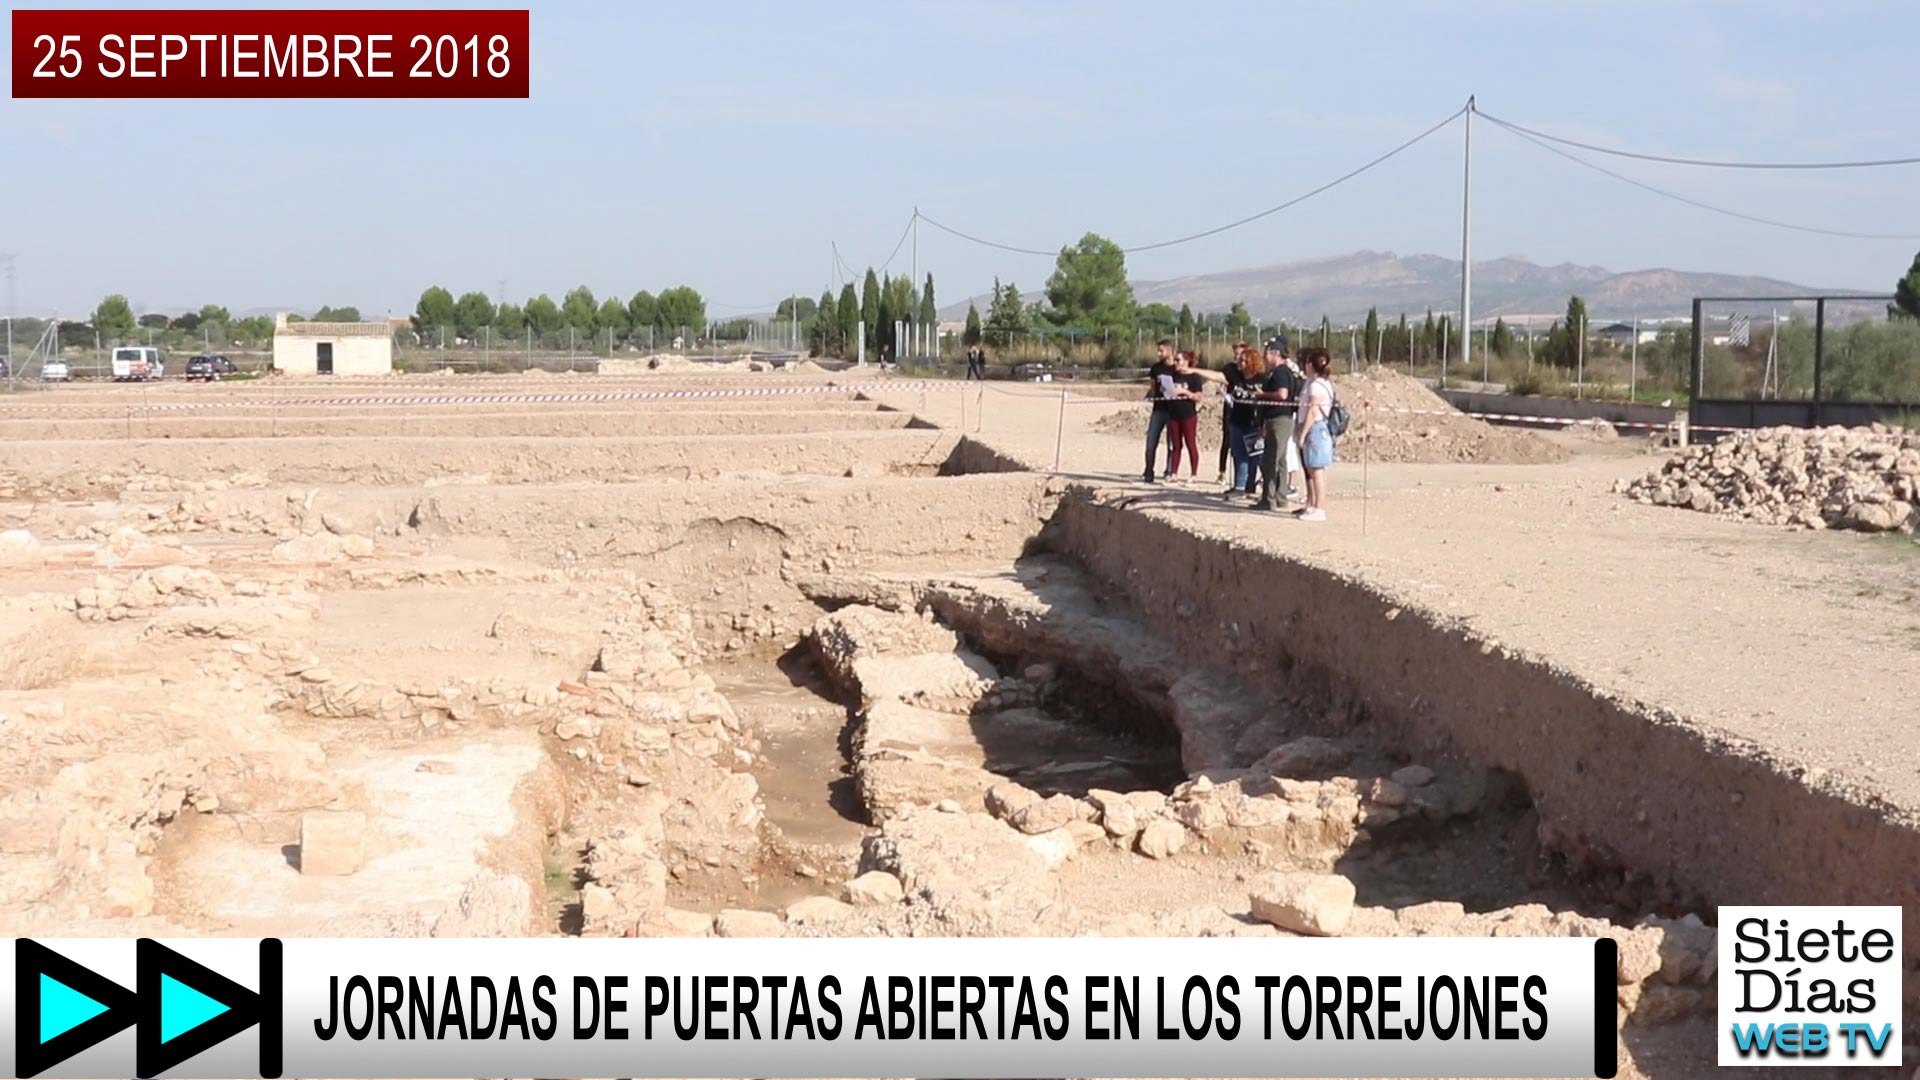 JORNADAS DE PUERTAS ABIERTAS EN LOS TORREJONES – 25 SEPTIEMBRE 2018